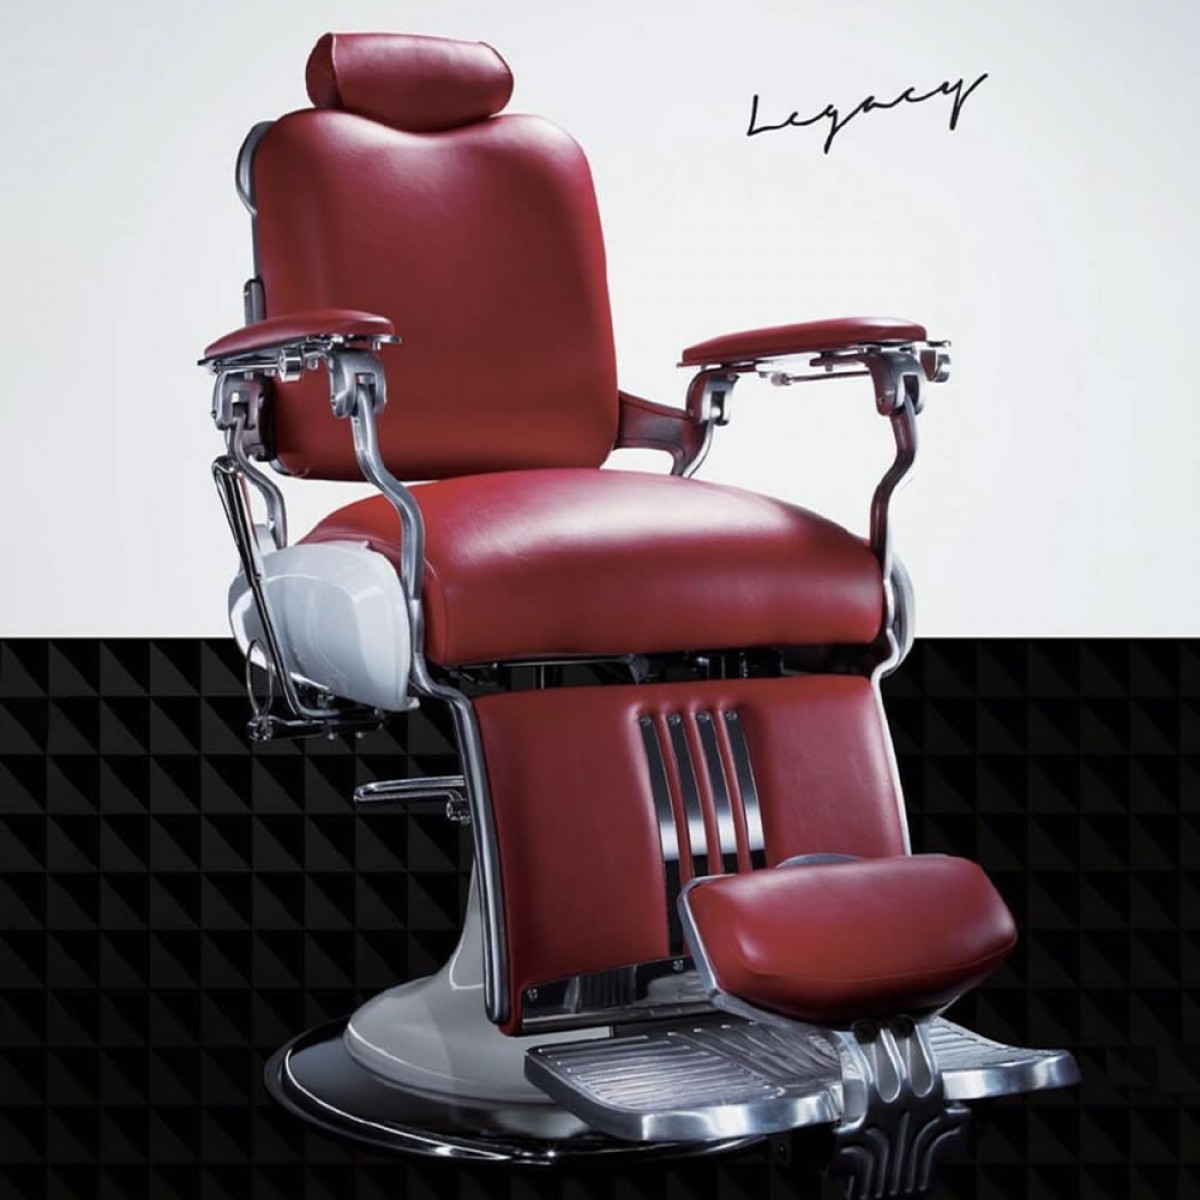 "LEGACY" Barber Chair by TAKARA BELMONT TAKARA Barber